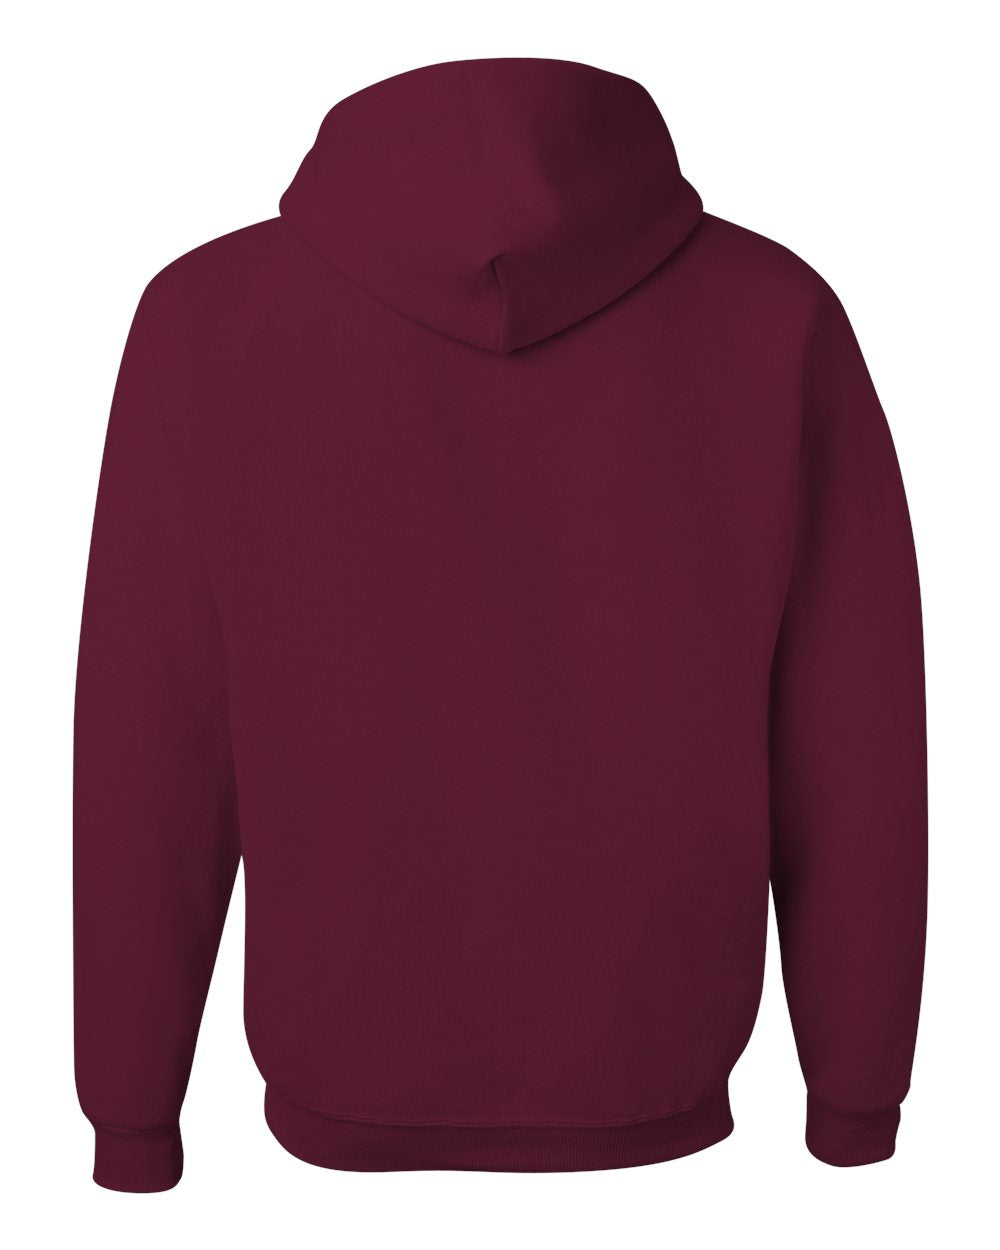 JERZEES NuBlend® Hooded Sweatshirt 996MR #color_Maroon